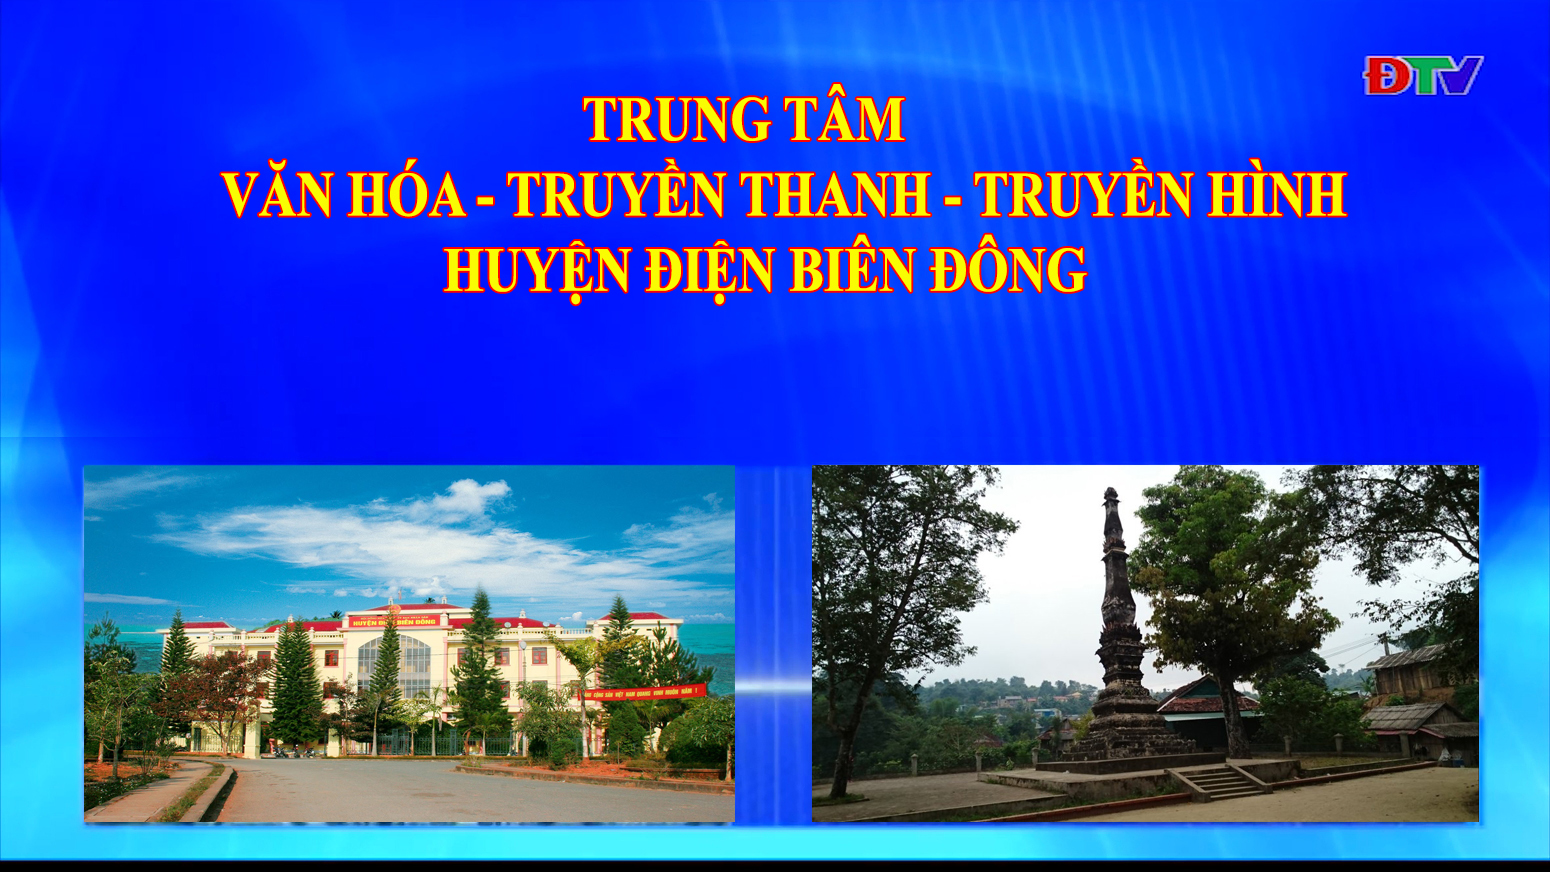 Trung tâm VH-TTTH huyện Điện Biên Đông (Ngày 28-11-2020)